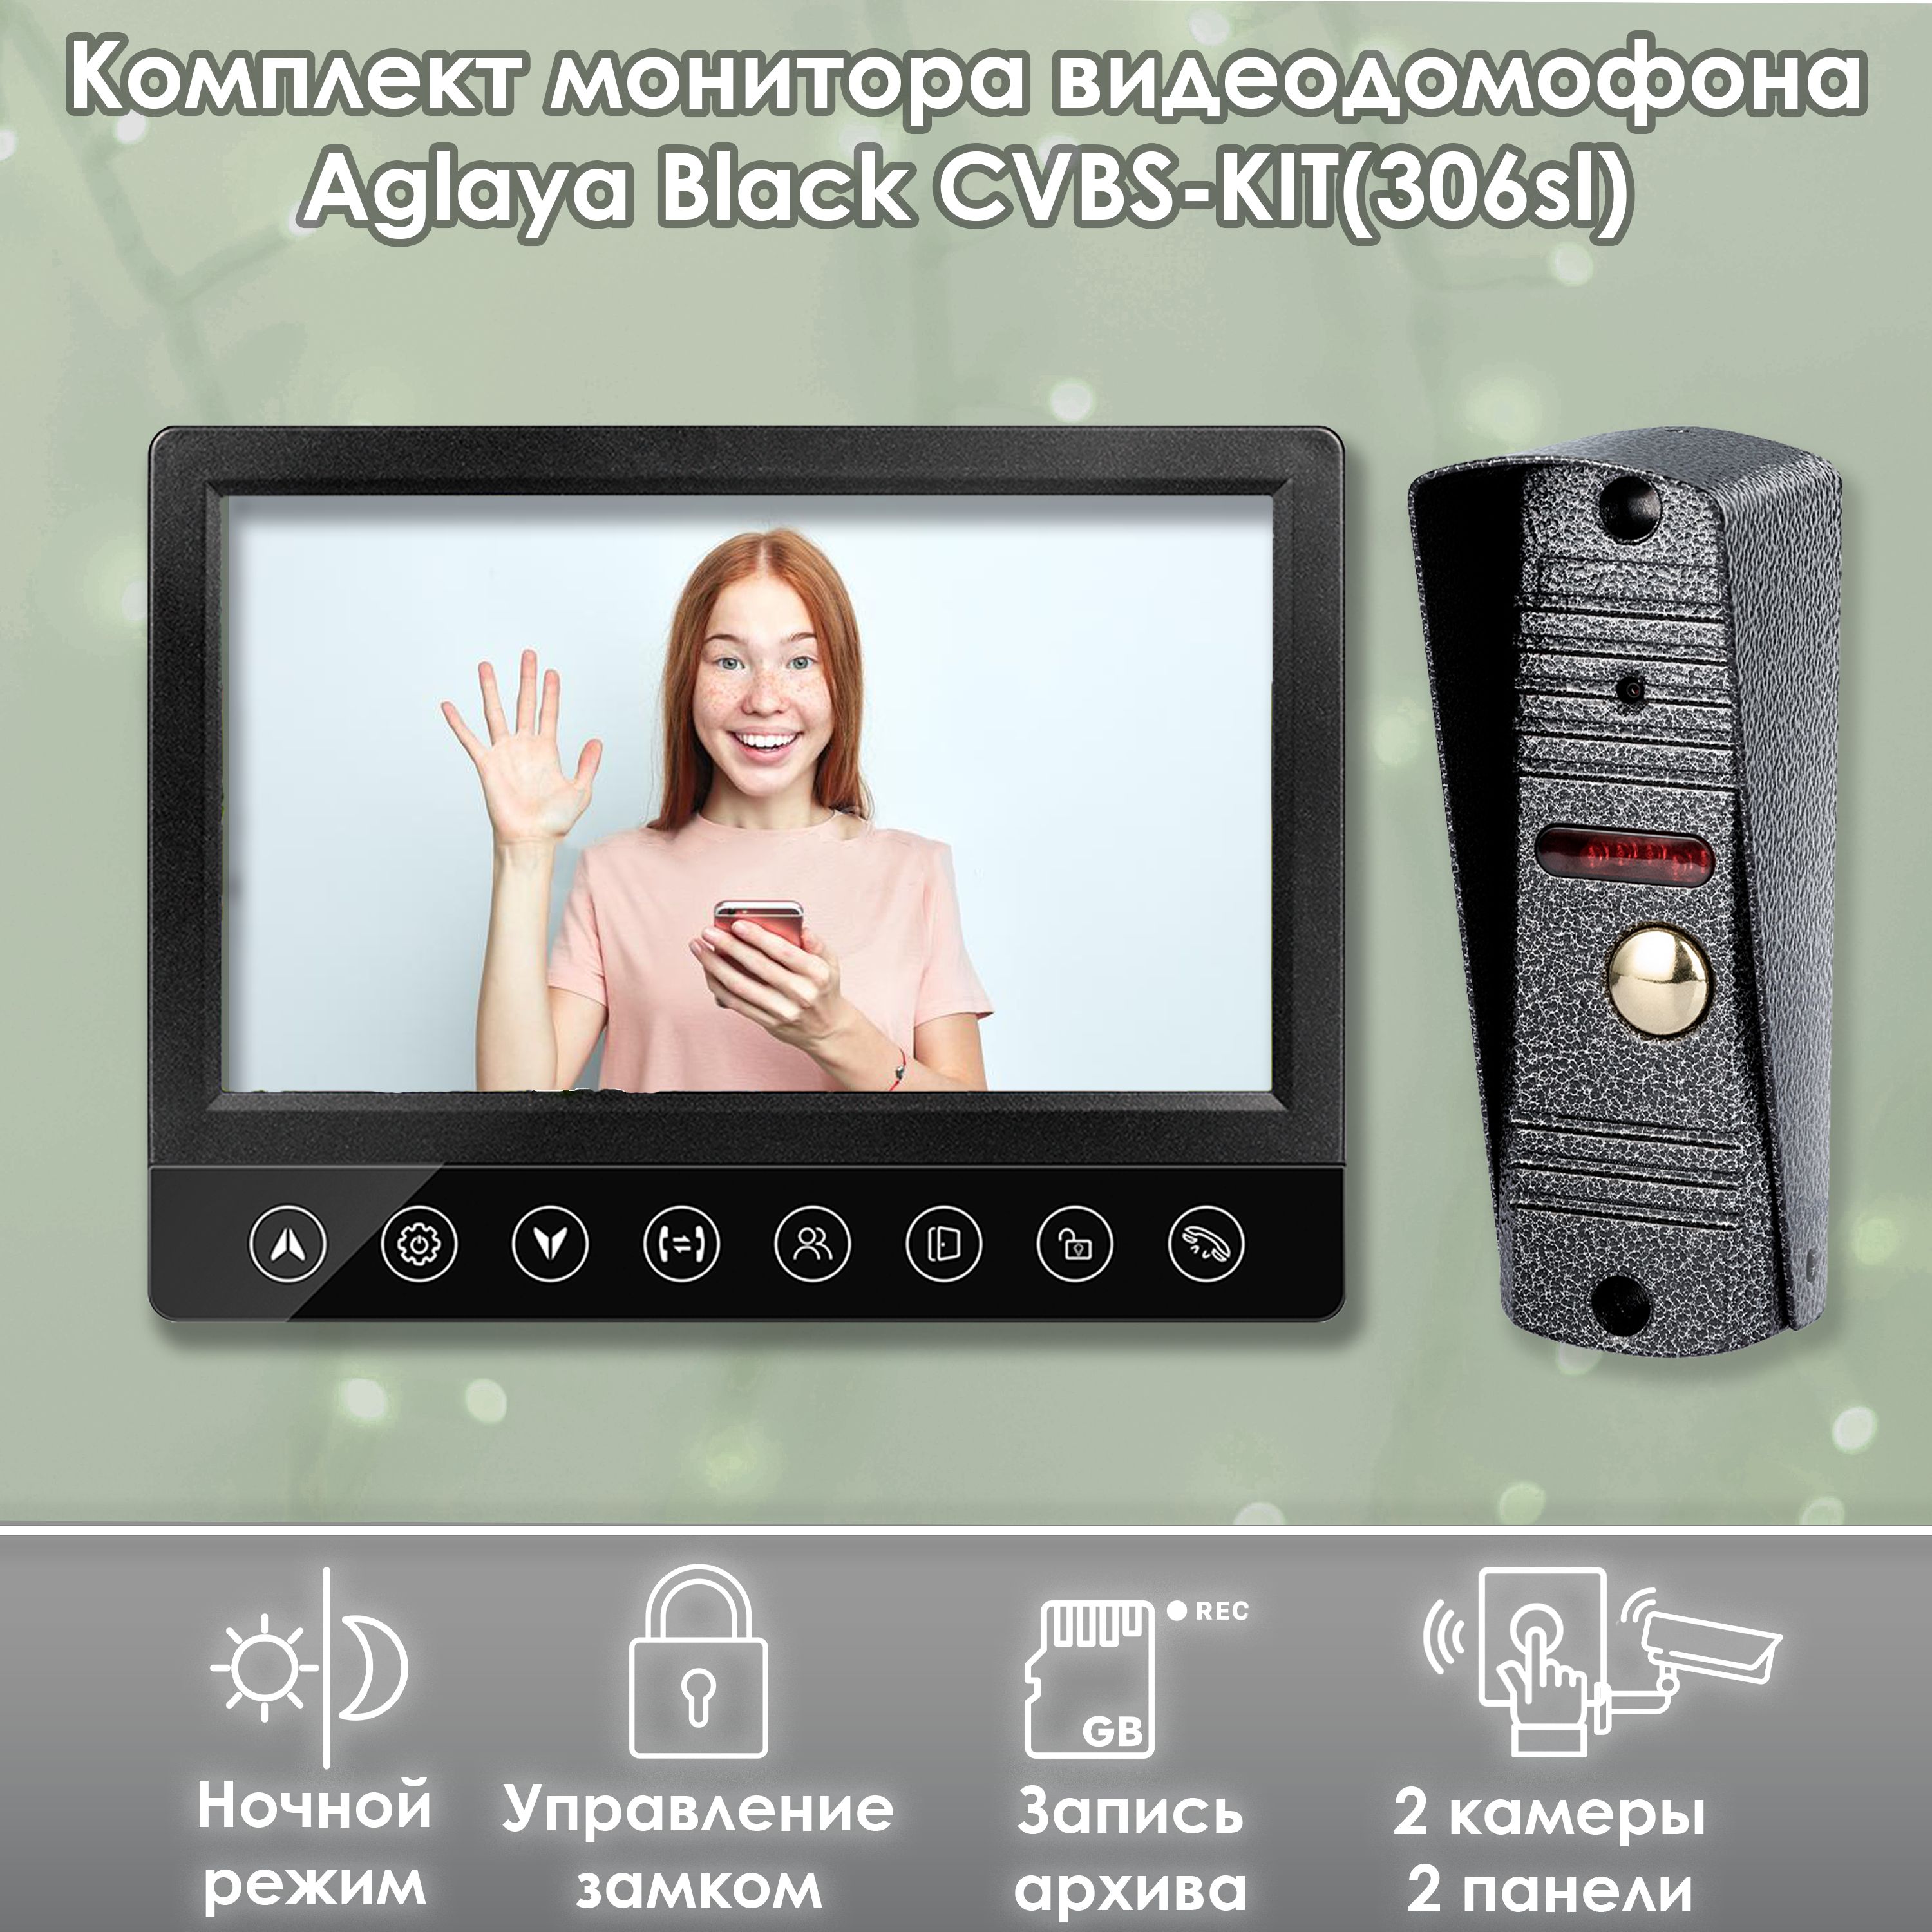 Комплект монитора видеодомофона Aglaya CVBS Black KIT (306sl), 7 дюймов